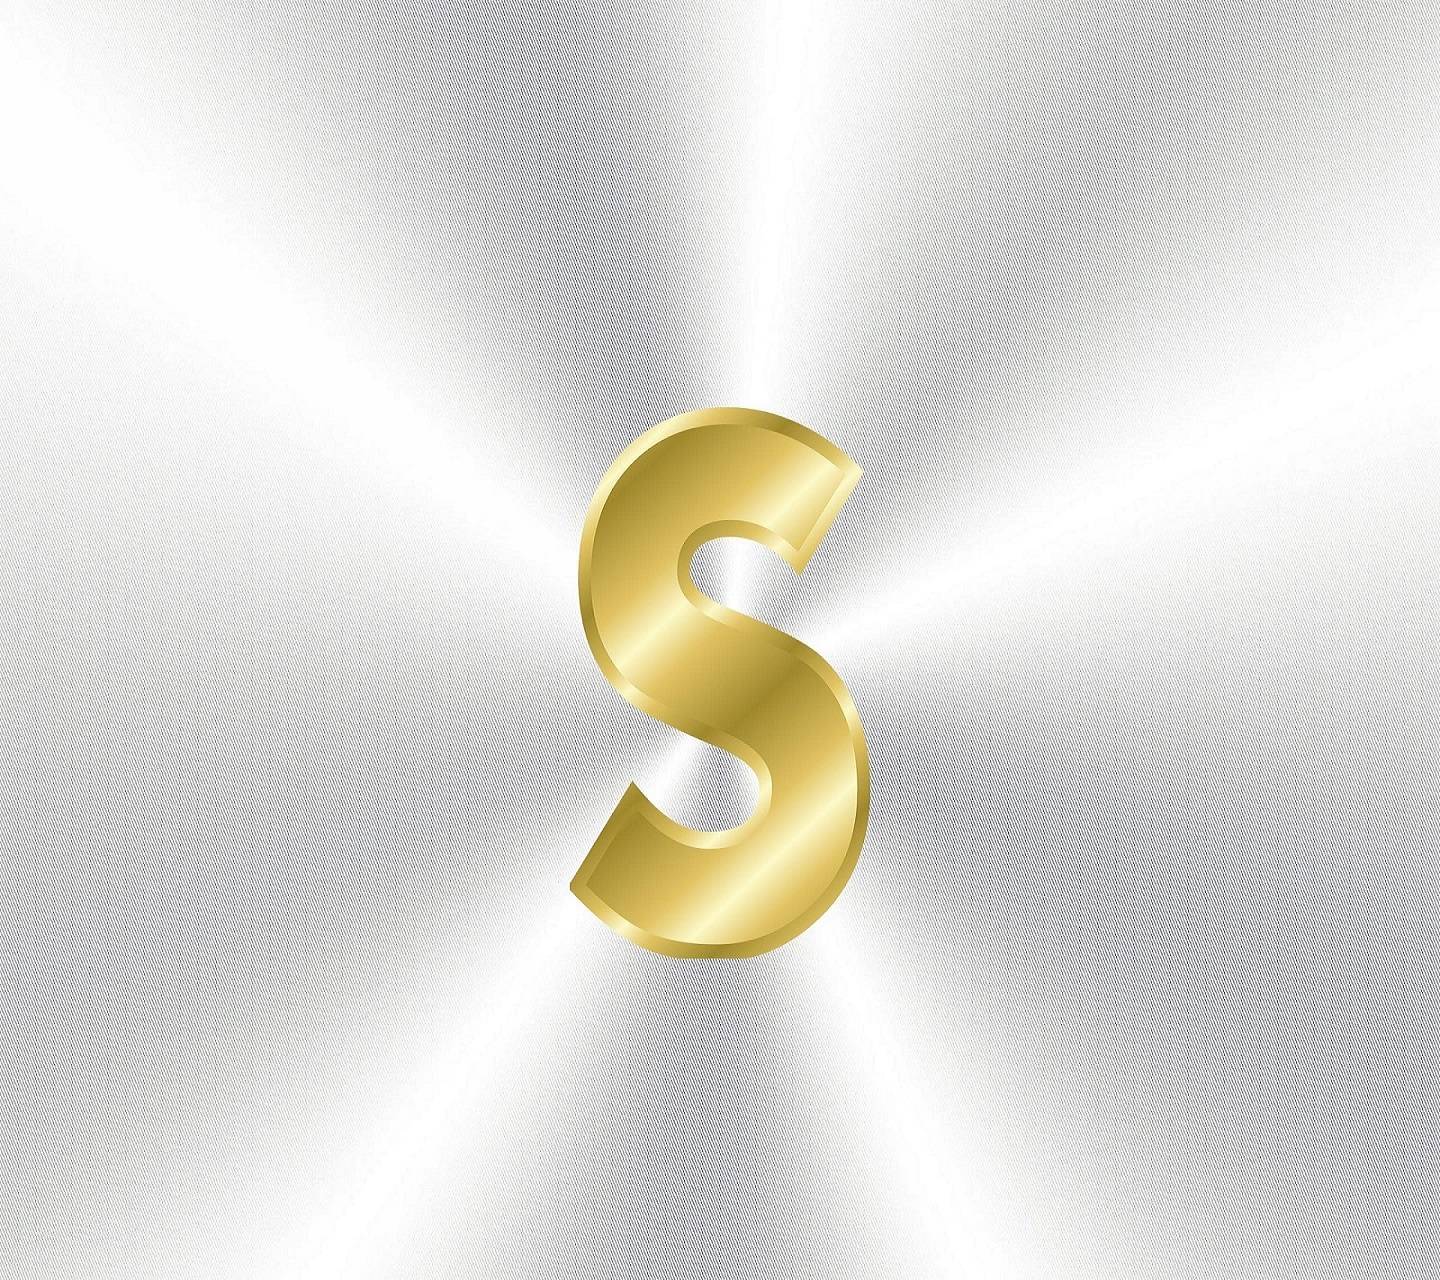 Golden Letter S Logo - Golden Letter S Wallpaper by _sn0w_ - c6 - Free on ZEDGE™